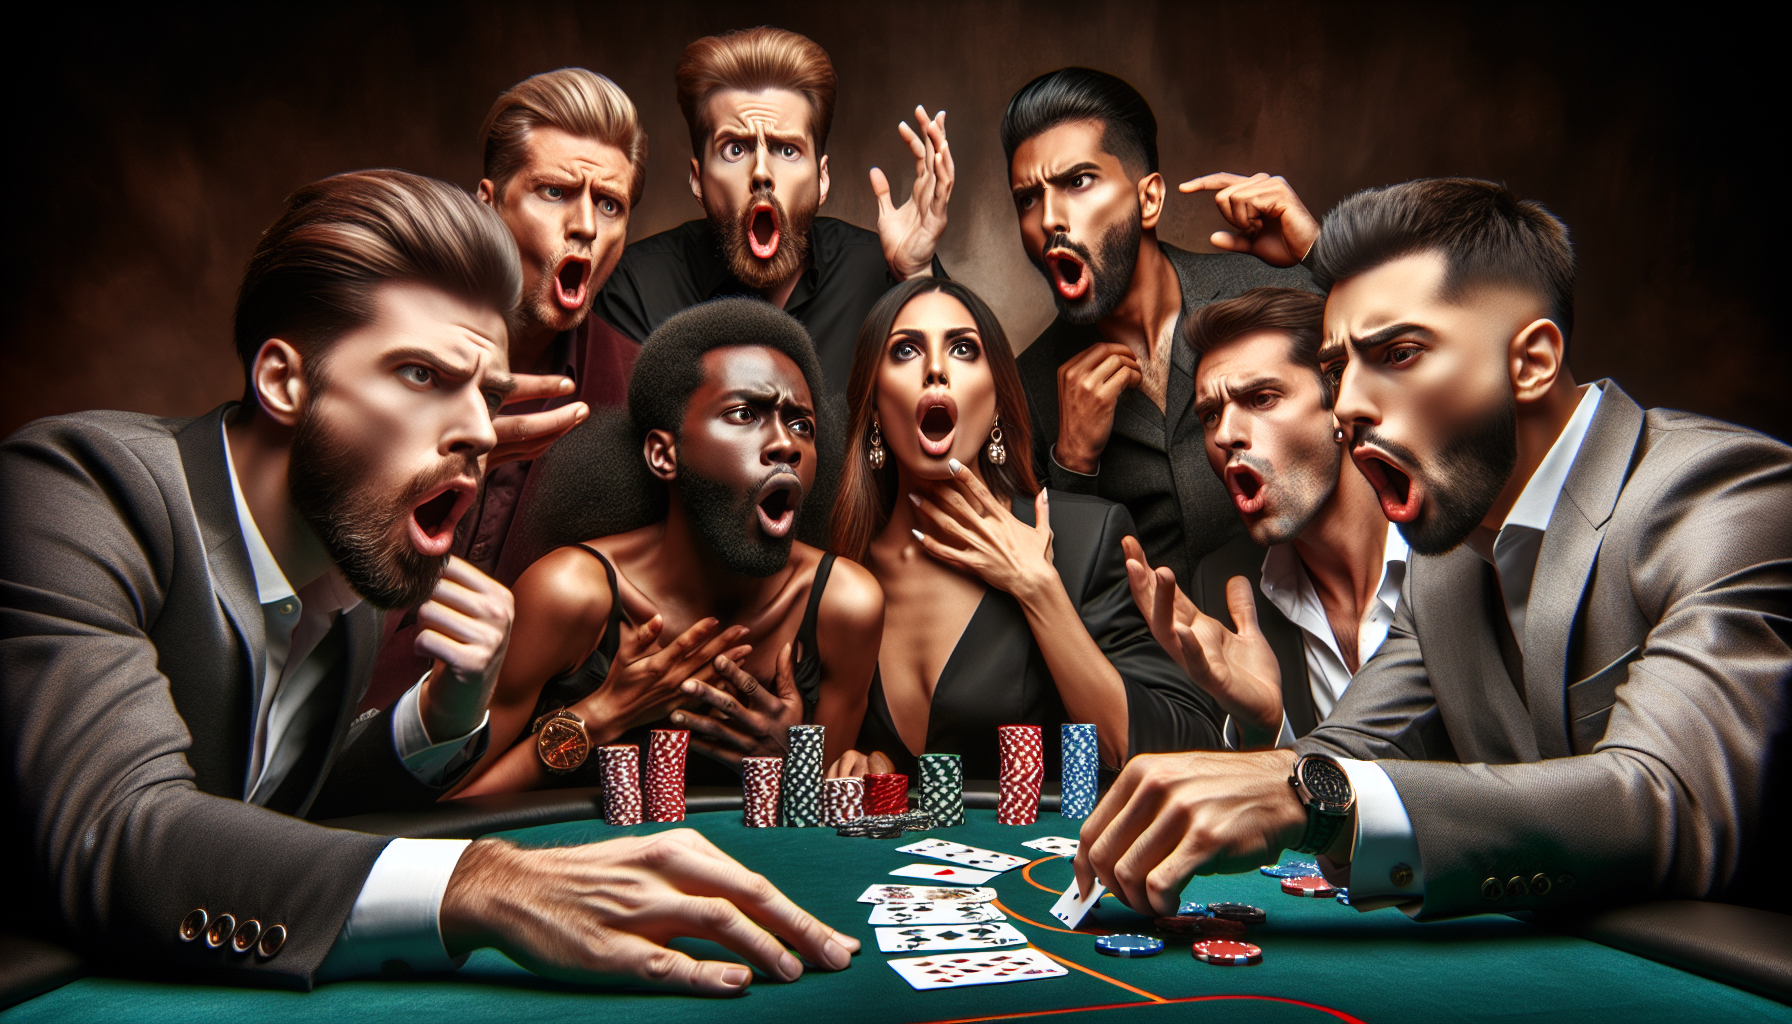 découvrez l'art du bluff au poker et apprenez les tactiques pour maîtriser cet aspect crucial du jeu de cartes.